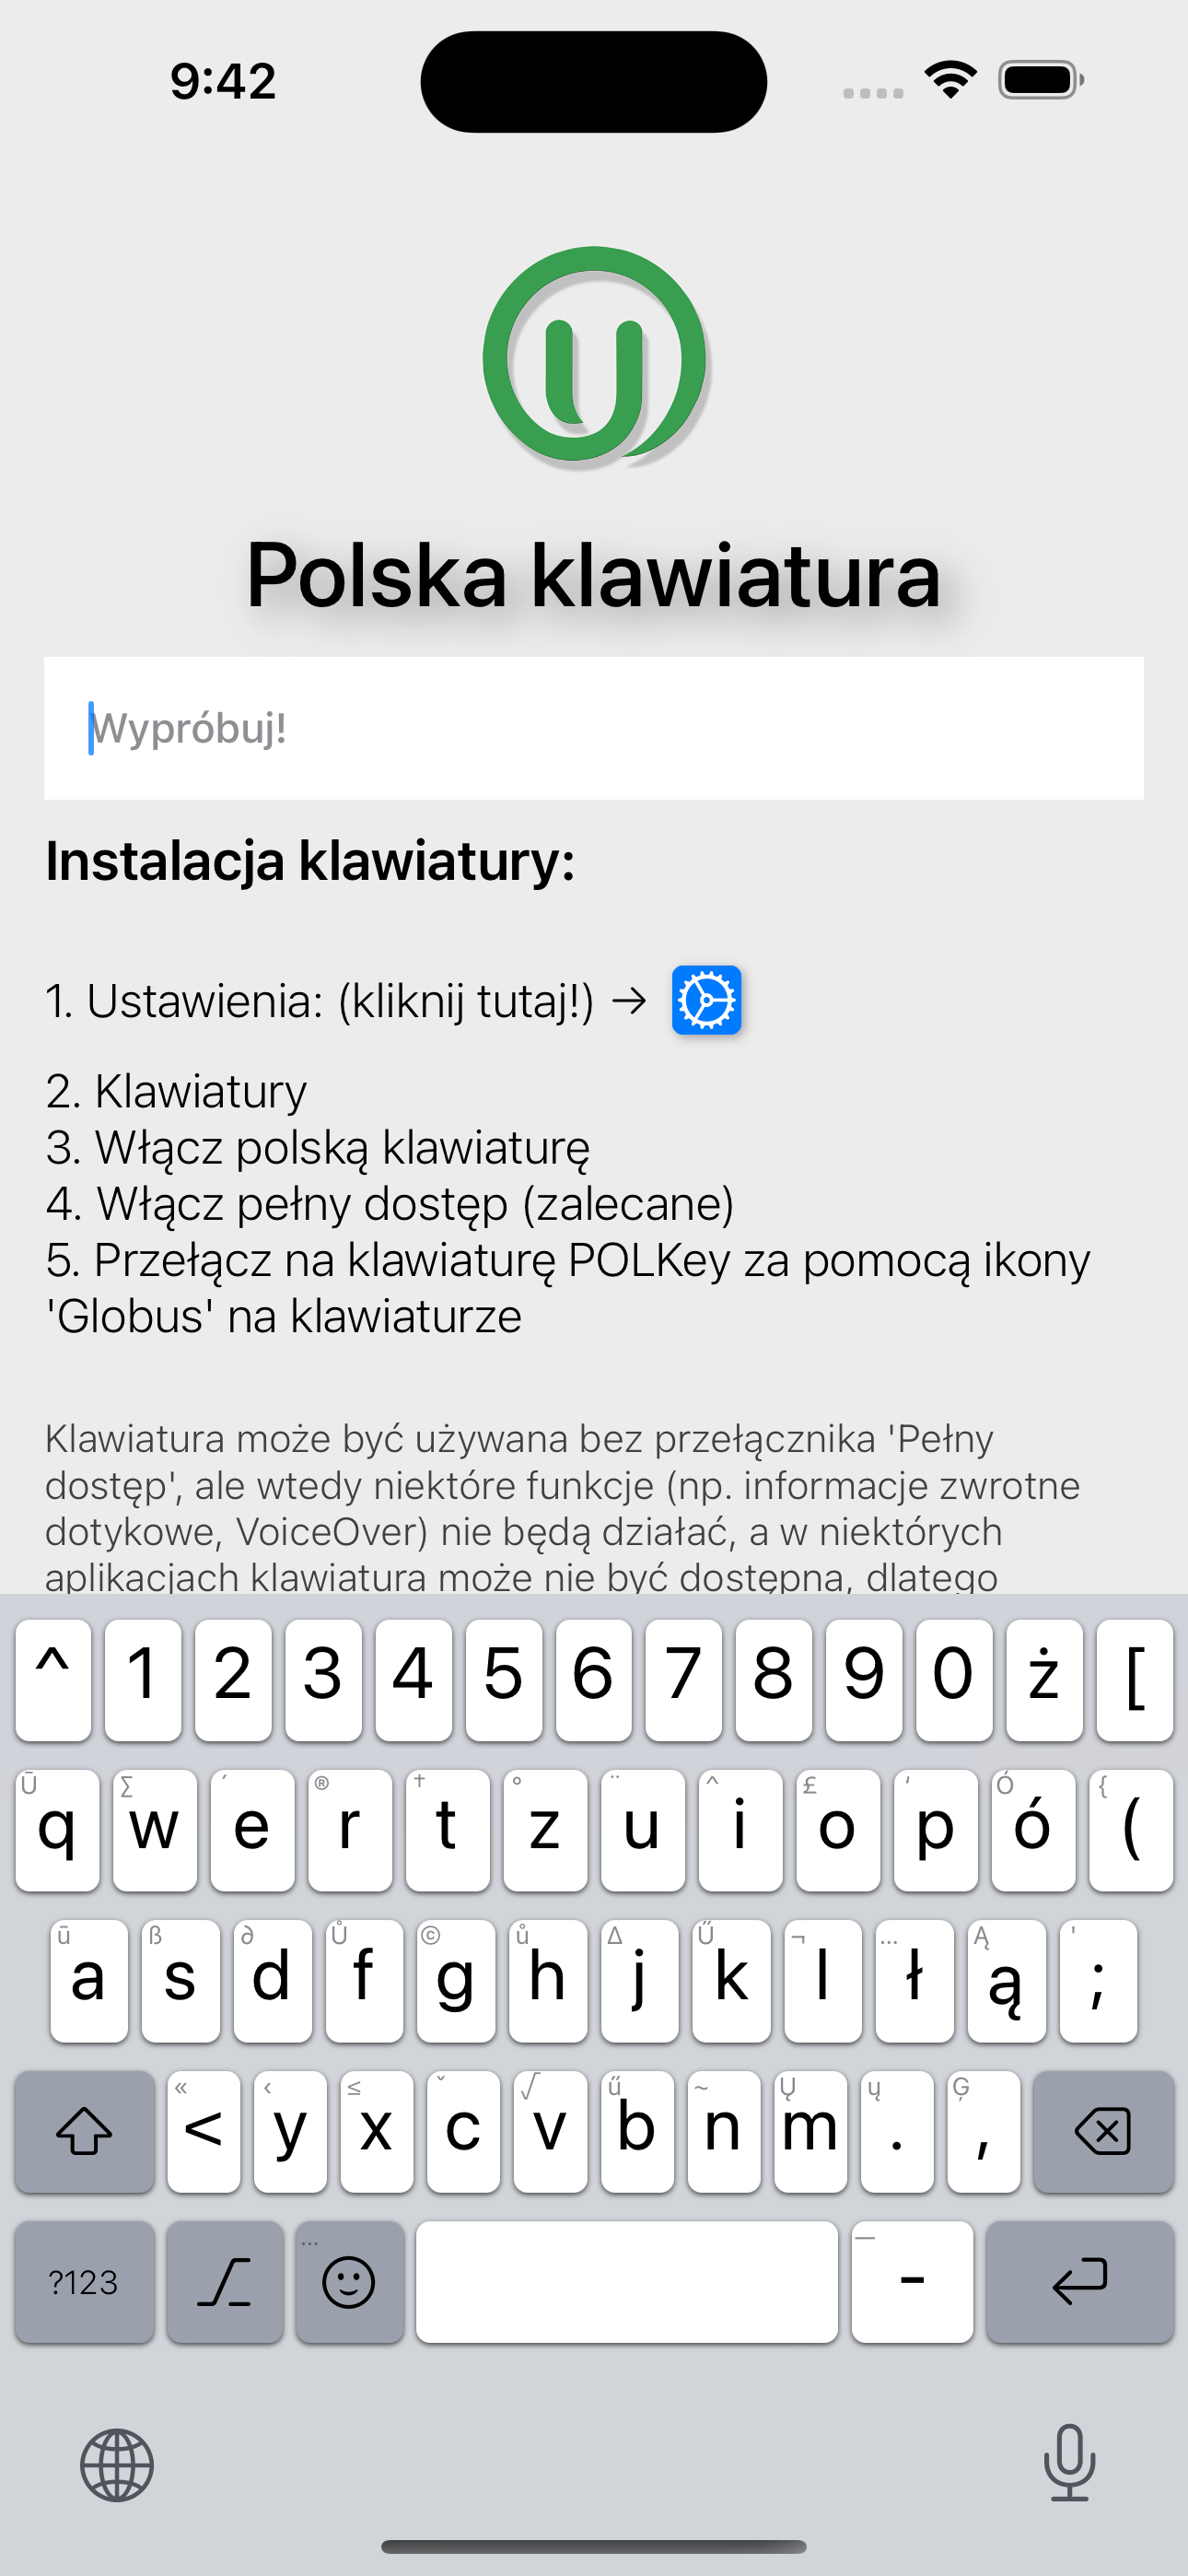 POLKey to polska klawiatura iOS | UniOffice